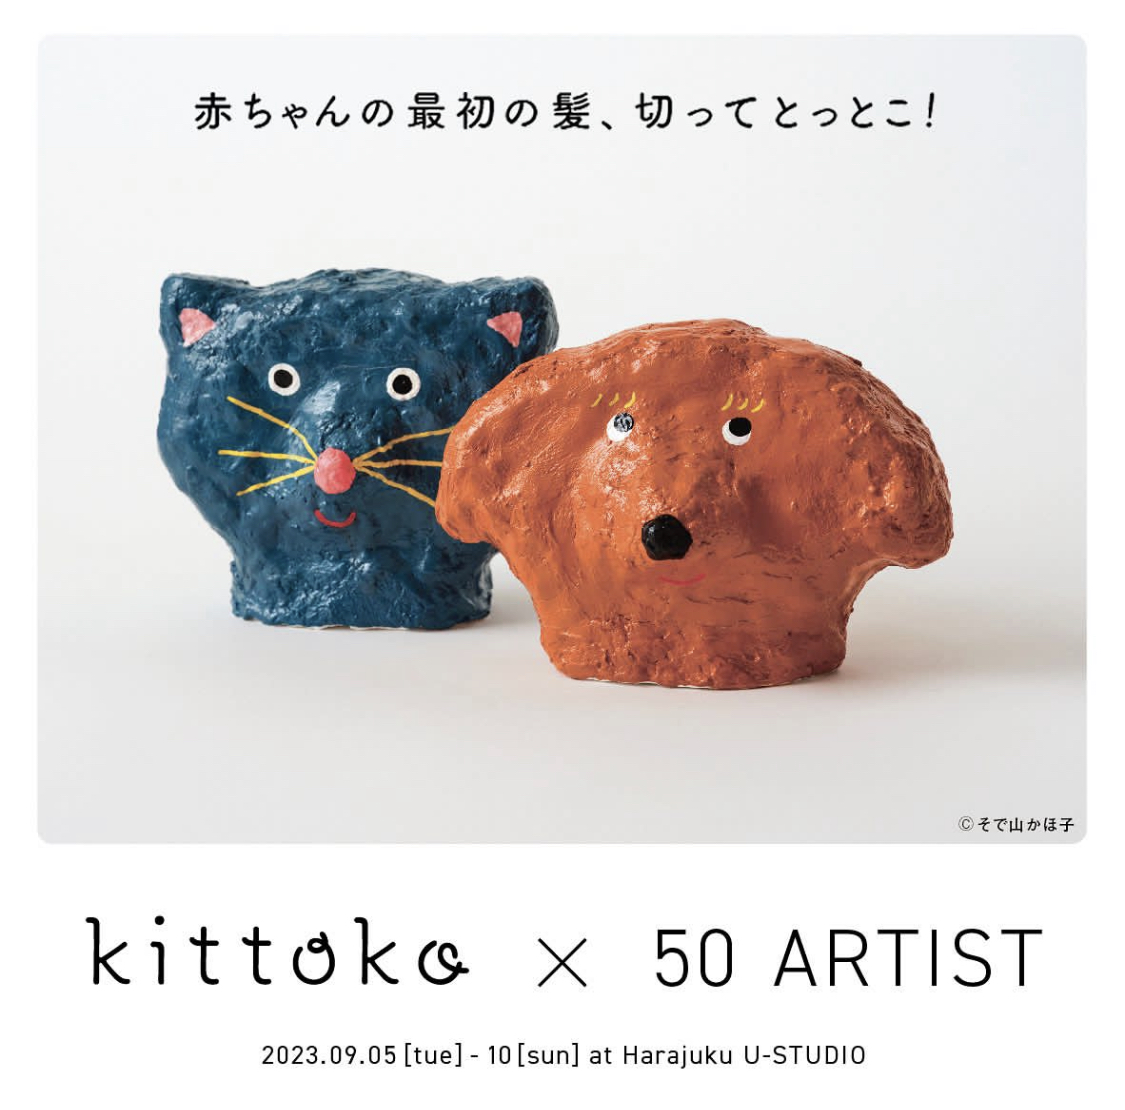 kittoko×50 ARTIST